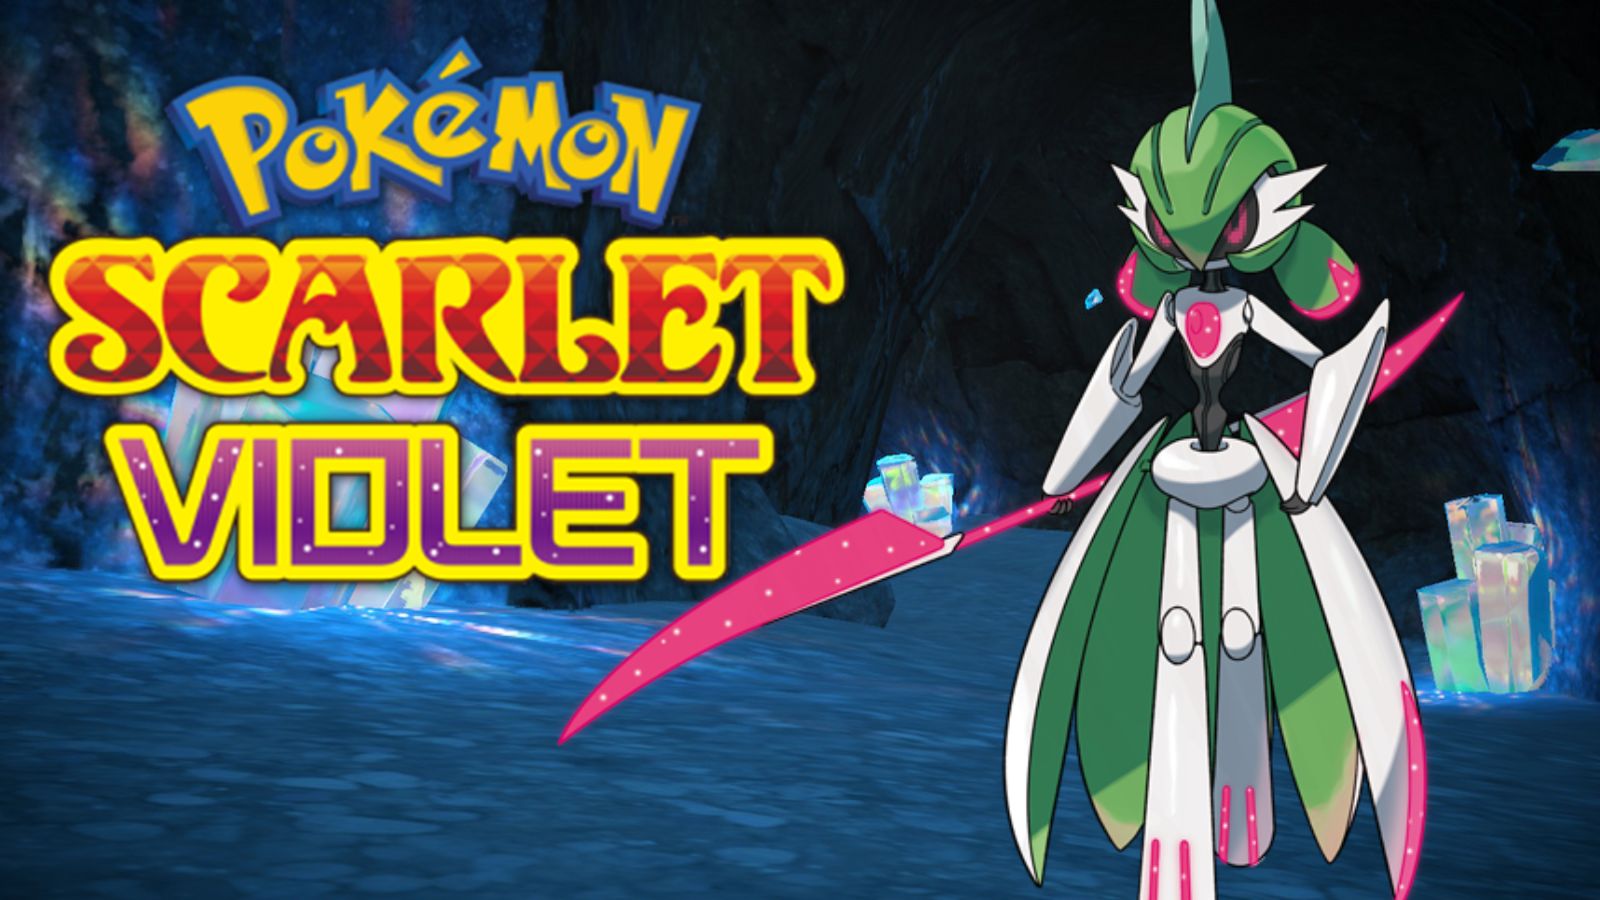 La entrenadora Pokémon Scarlett y Violet se ponen al día con la carrera de Shiny en un encuentro hilarante